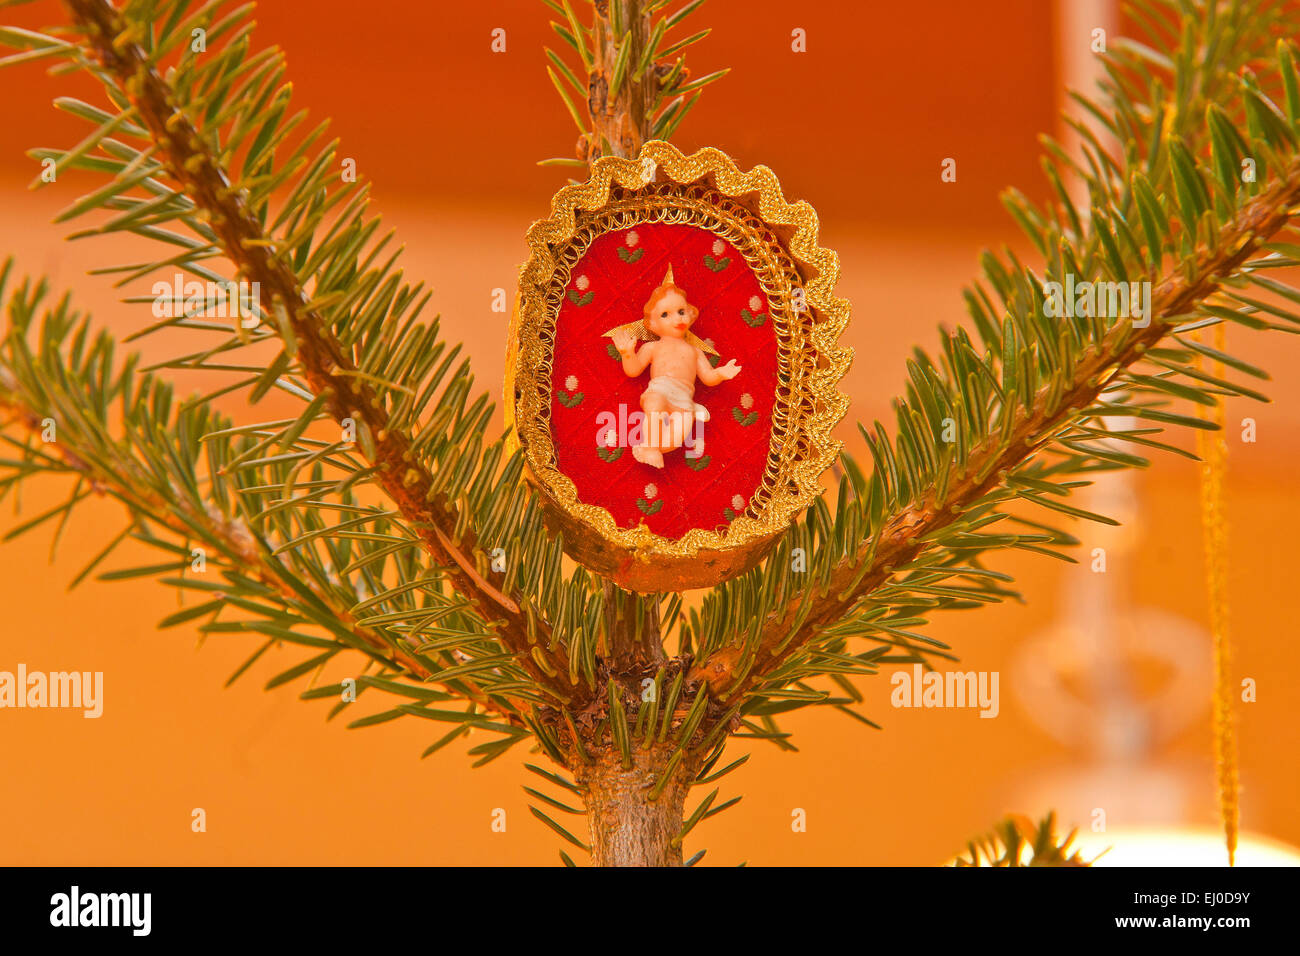 Europa, Deutschland, Bayern, Weihnachten, Weihnachten, Tannenbaum, Weihnachtsbaum, Weihnachtsdekoration, Jesus, Stockfoto